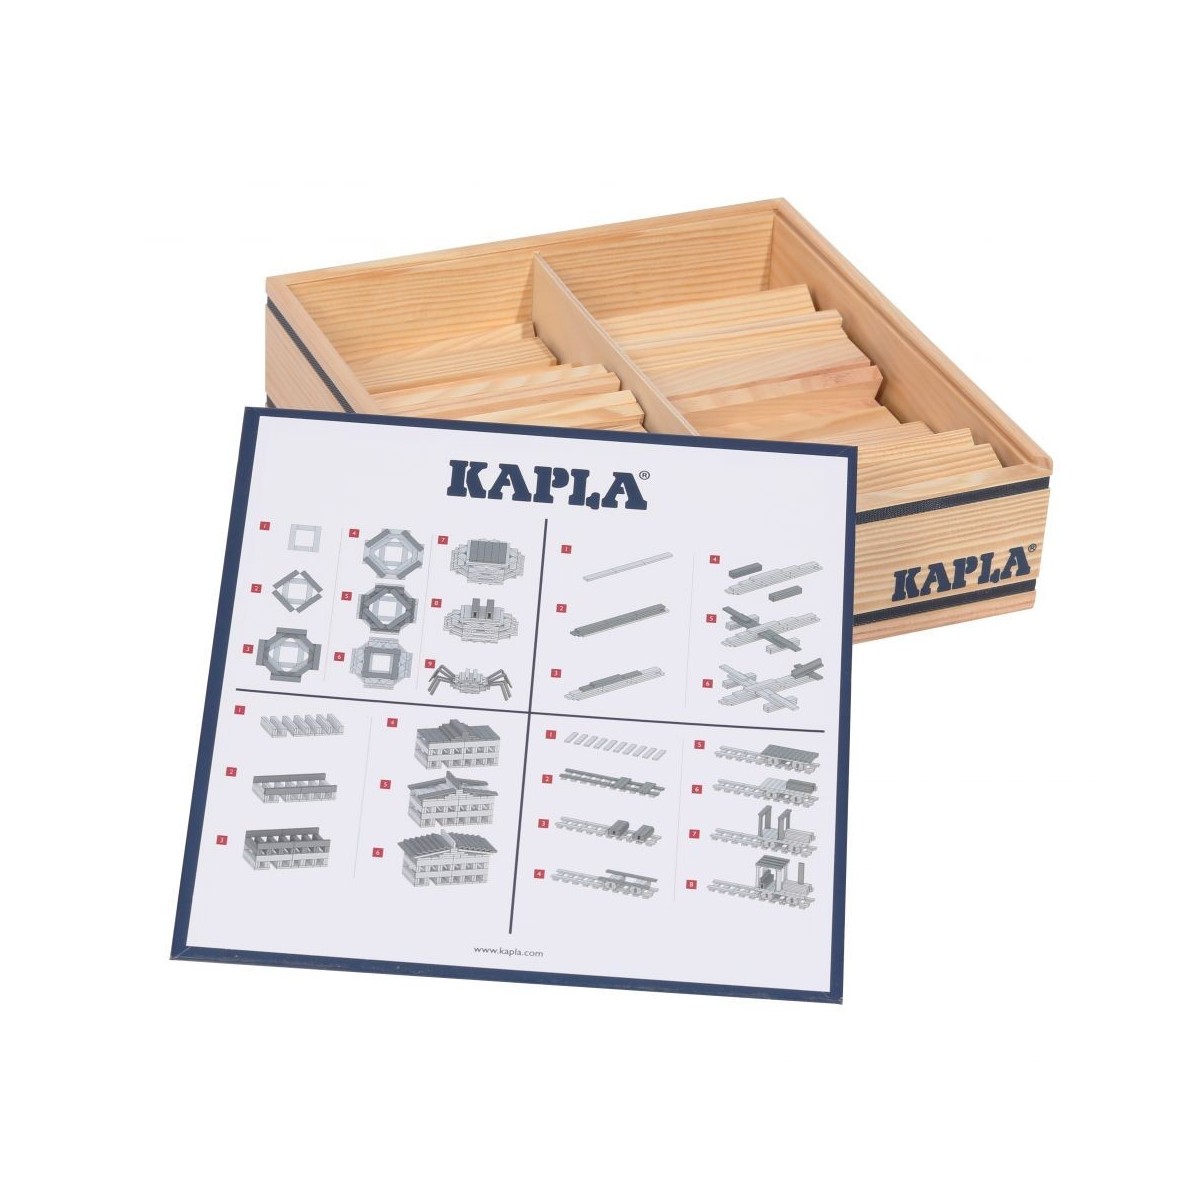 Kapla, coffret de 100 planchettes en bois